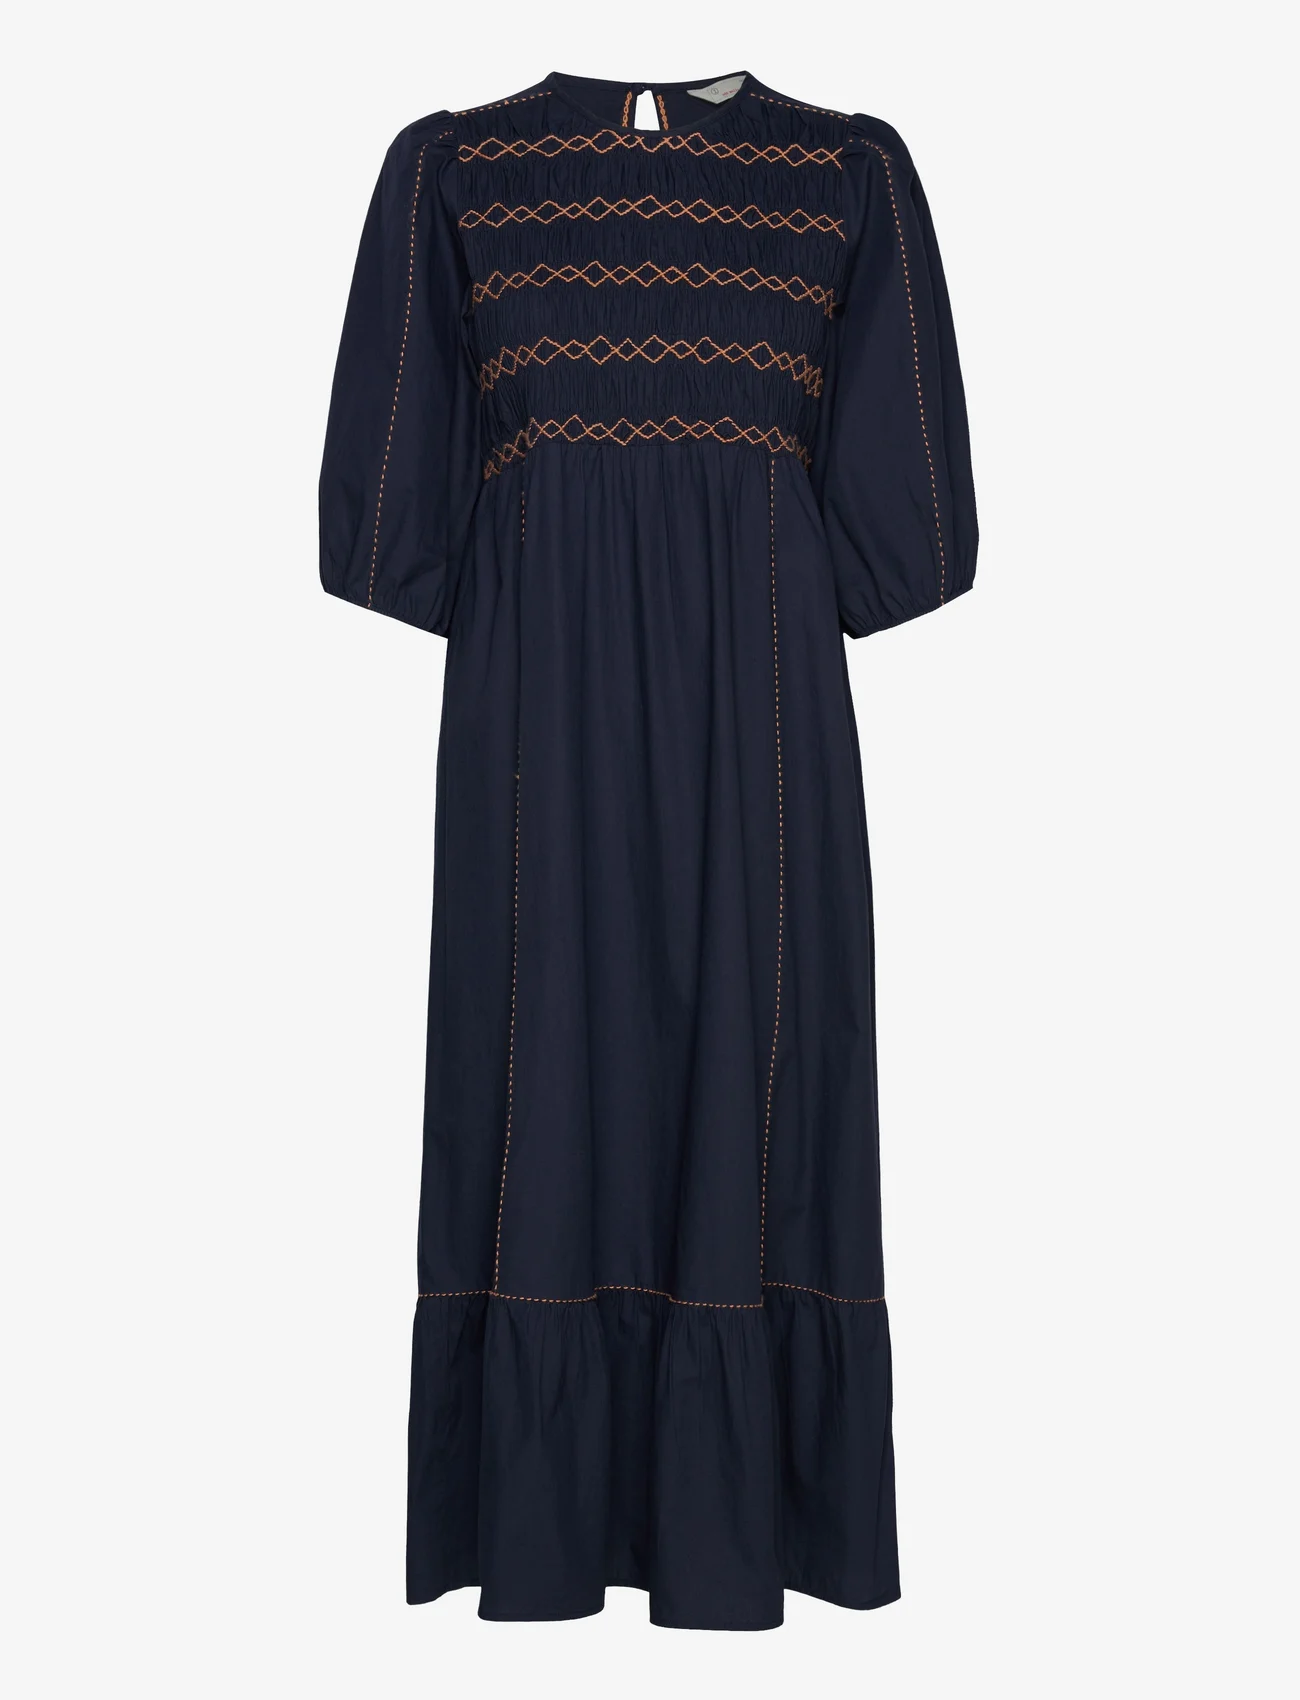 ODD MOLLY - Kaia Dress - vidutinio ilgio suknelės - french navy - 0